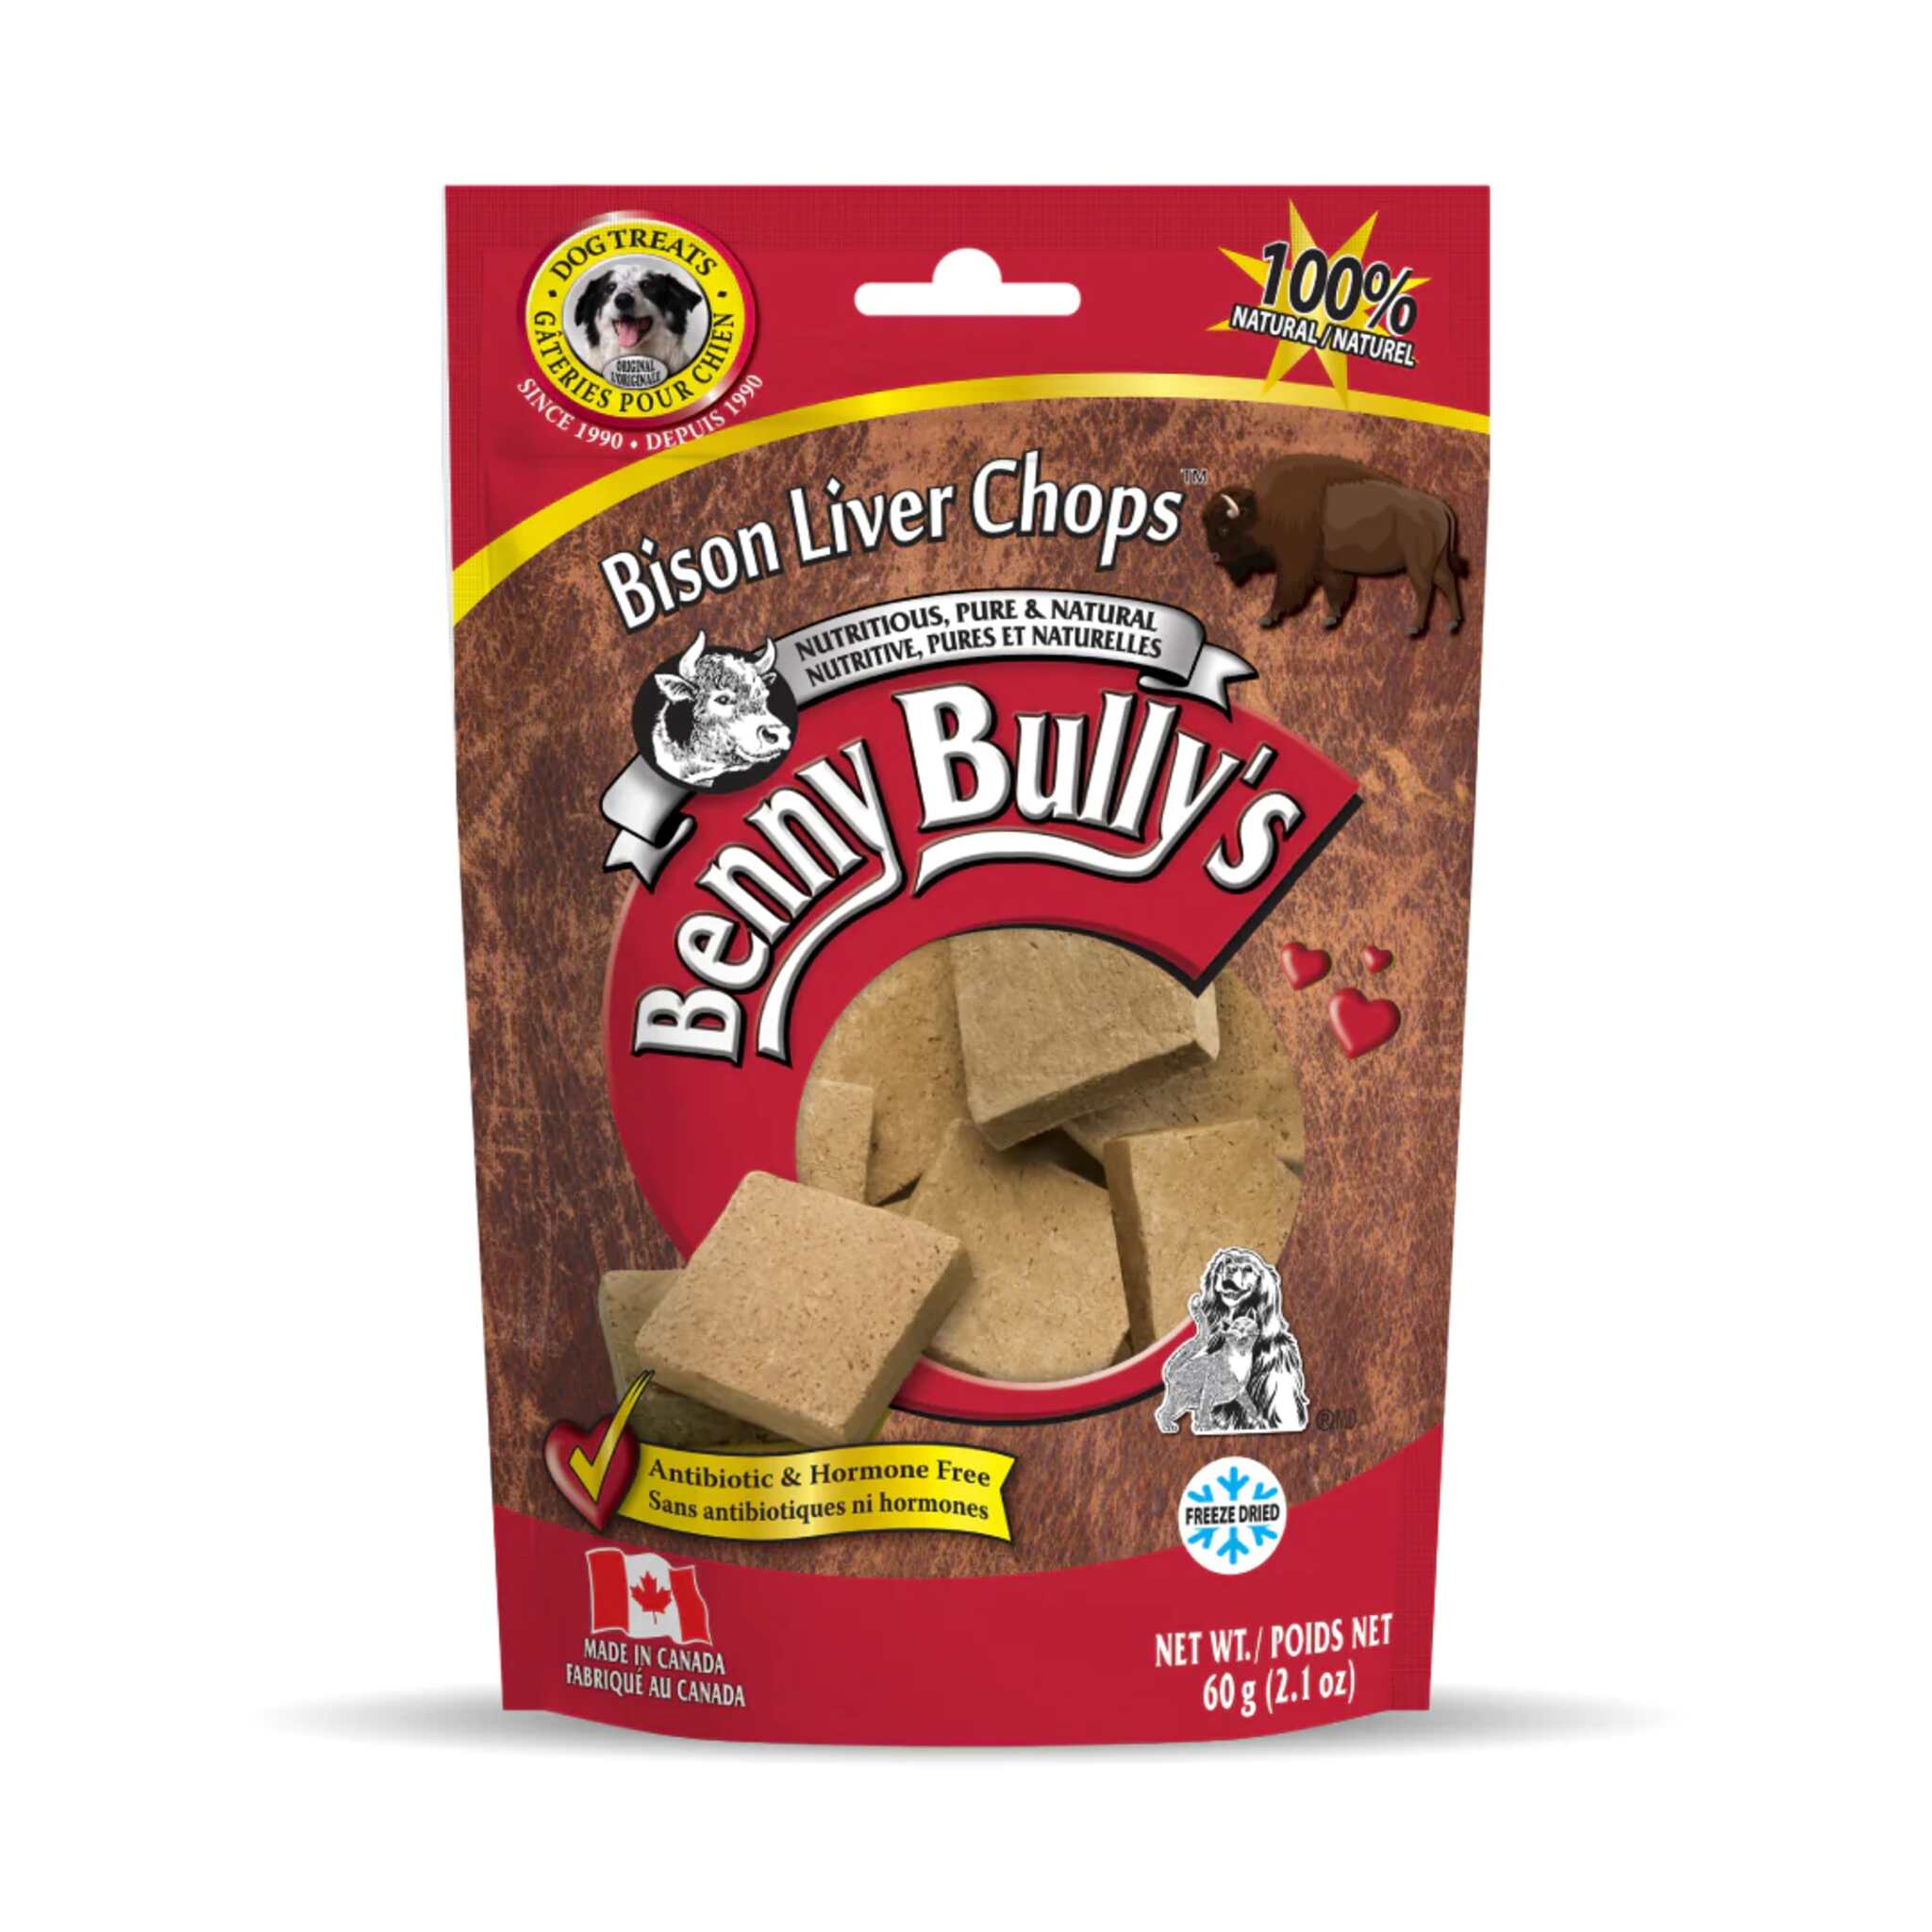 Benny Bully's Bison Liver Chops 60 g